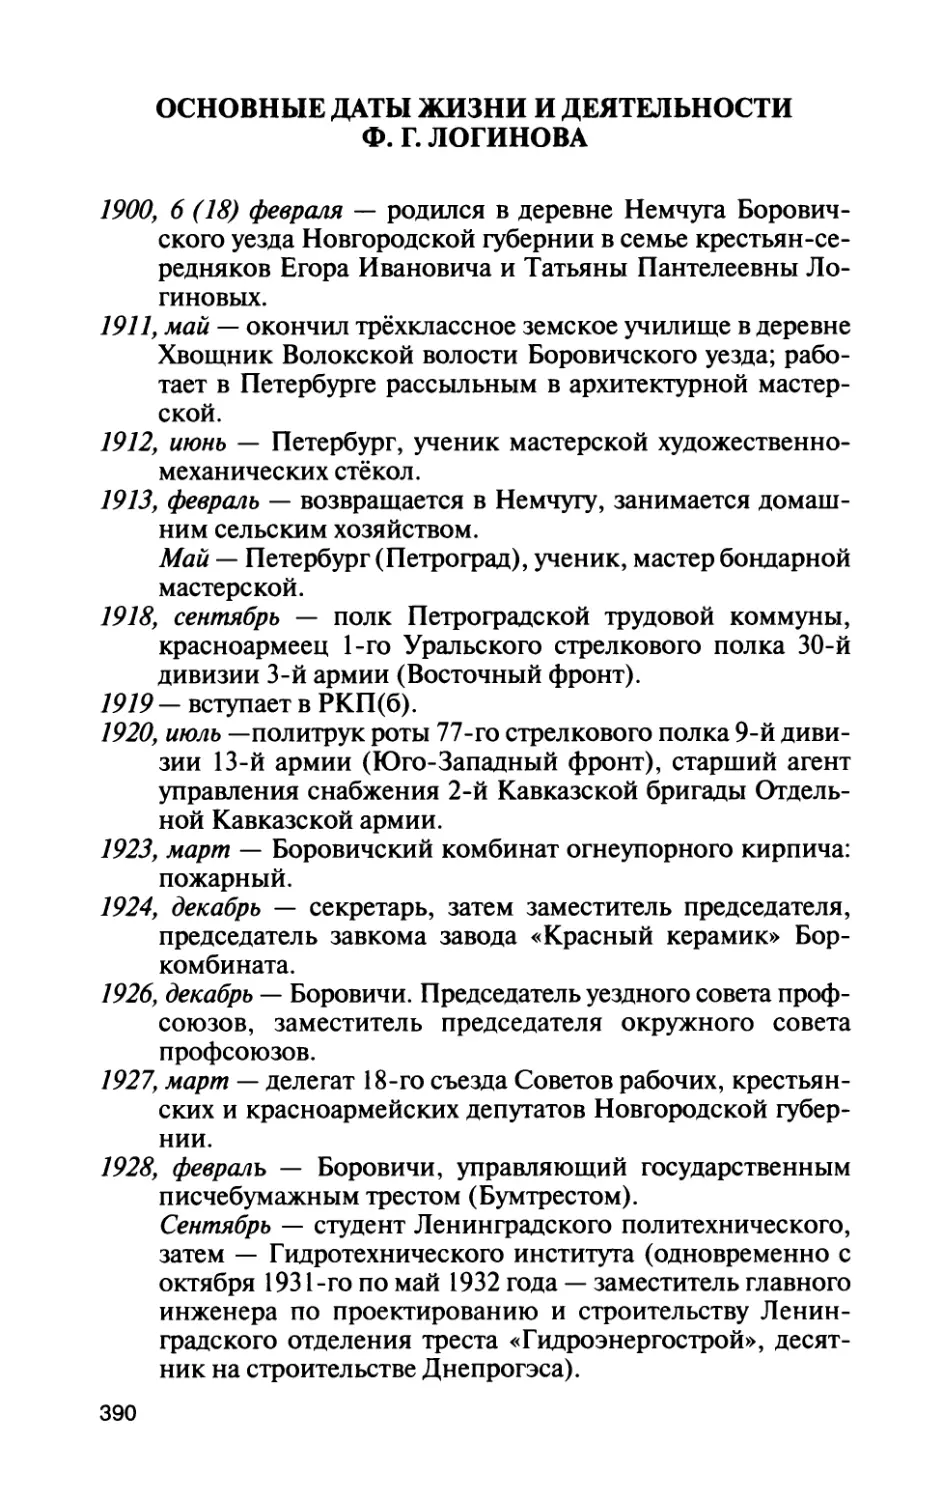 Основные даты жизни и деятельности Ф. Г. Логинова